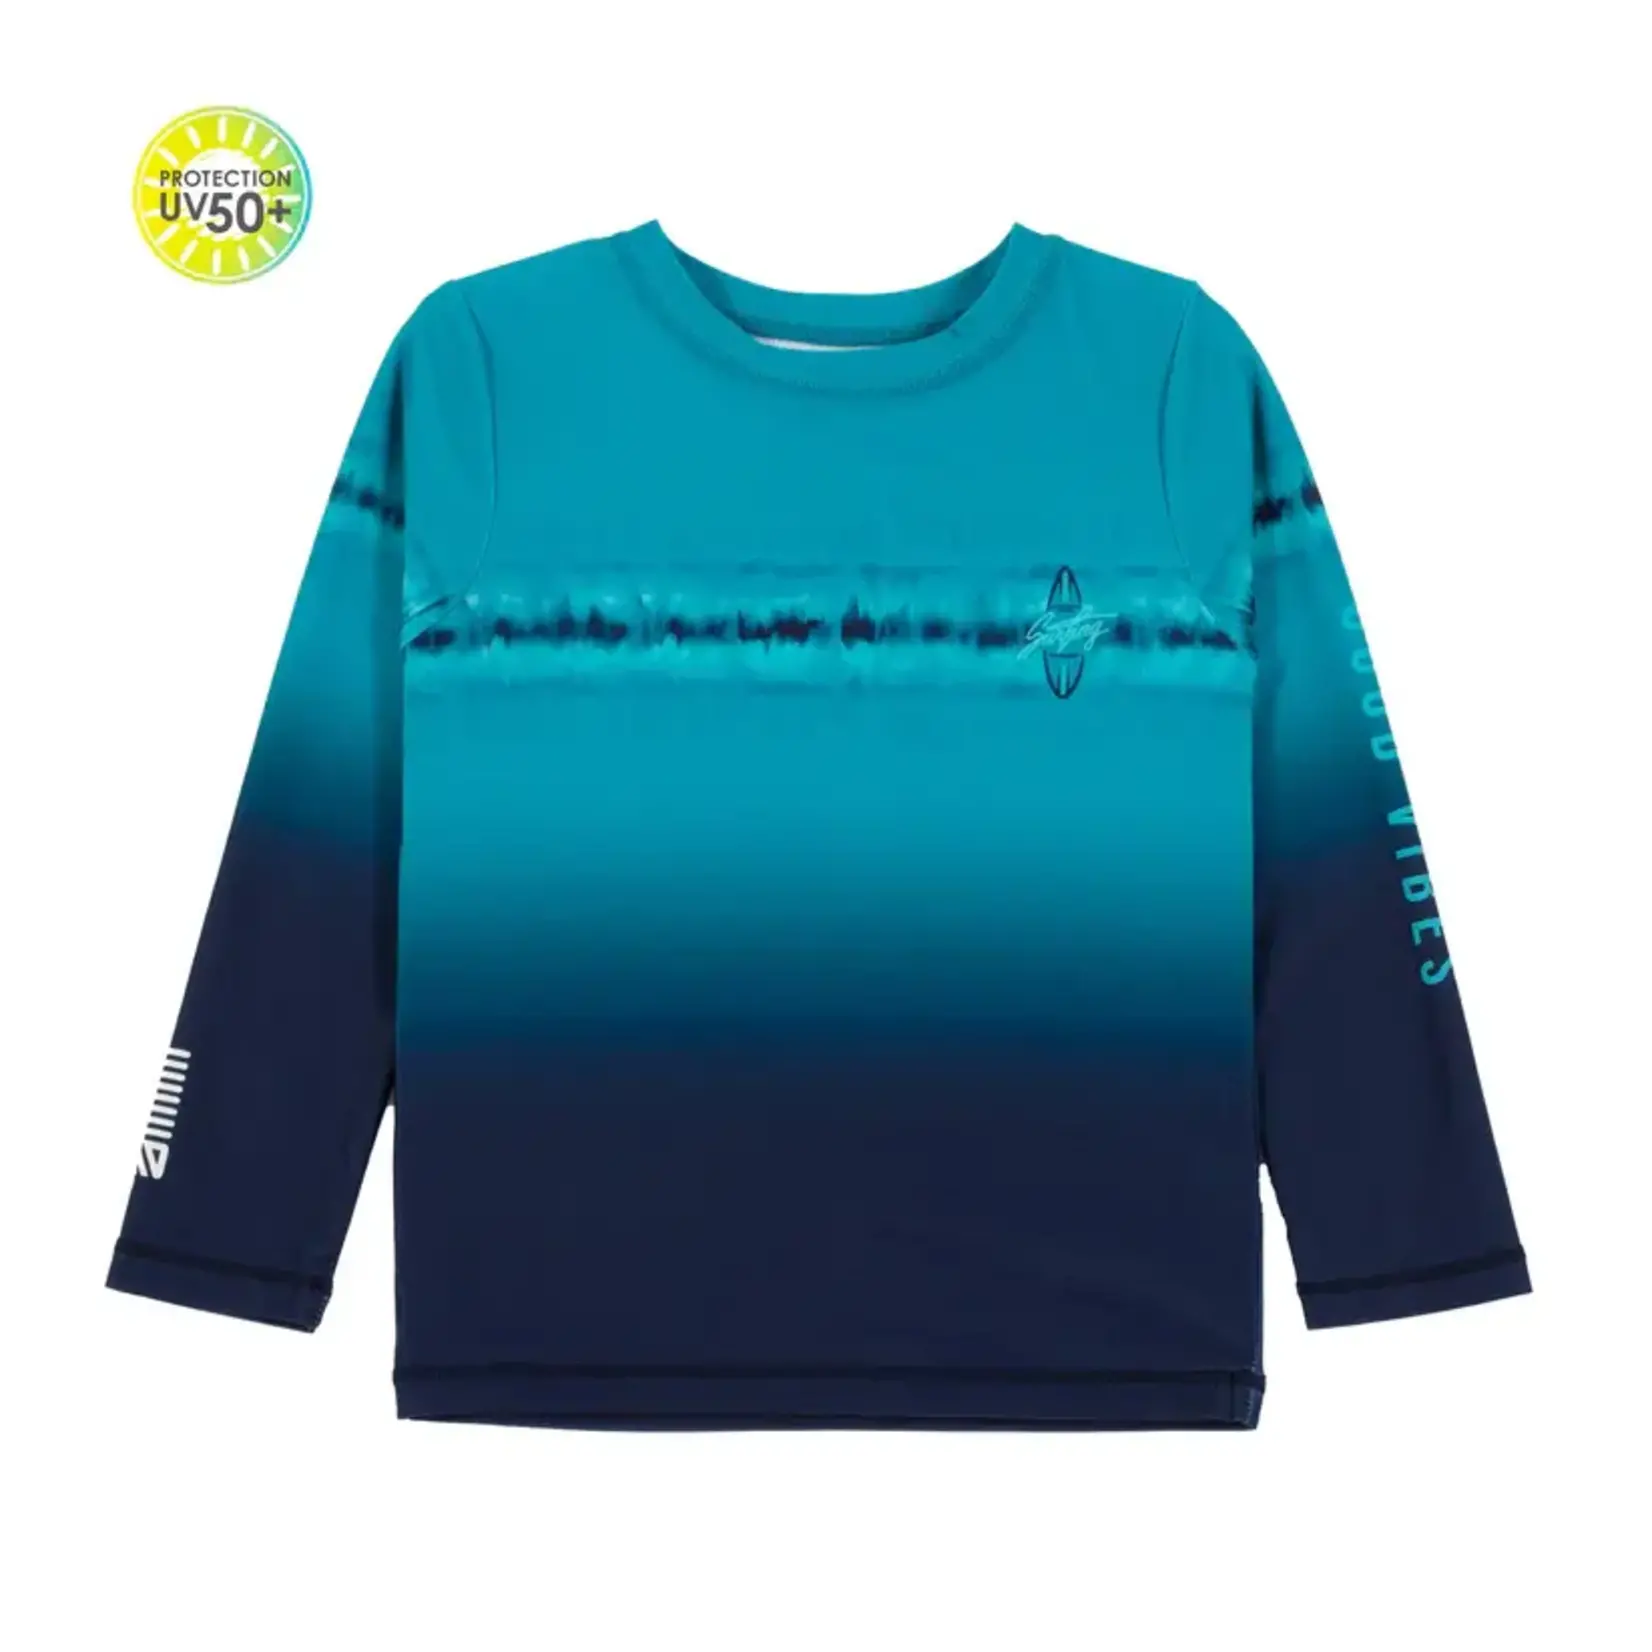 Nanö NANÖ -  Turquoise and navy long-sleeve rashguard t-shirt.